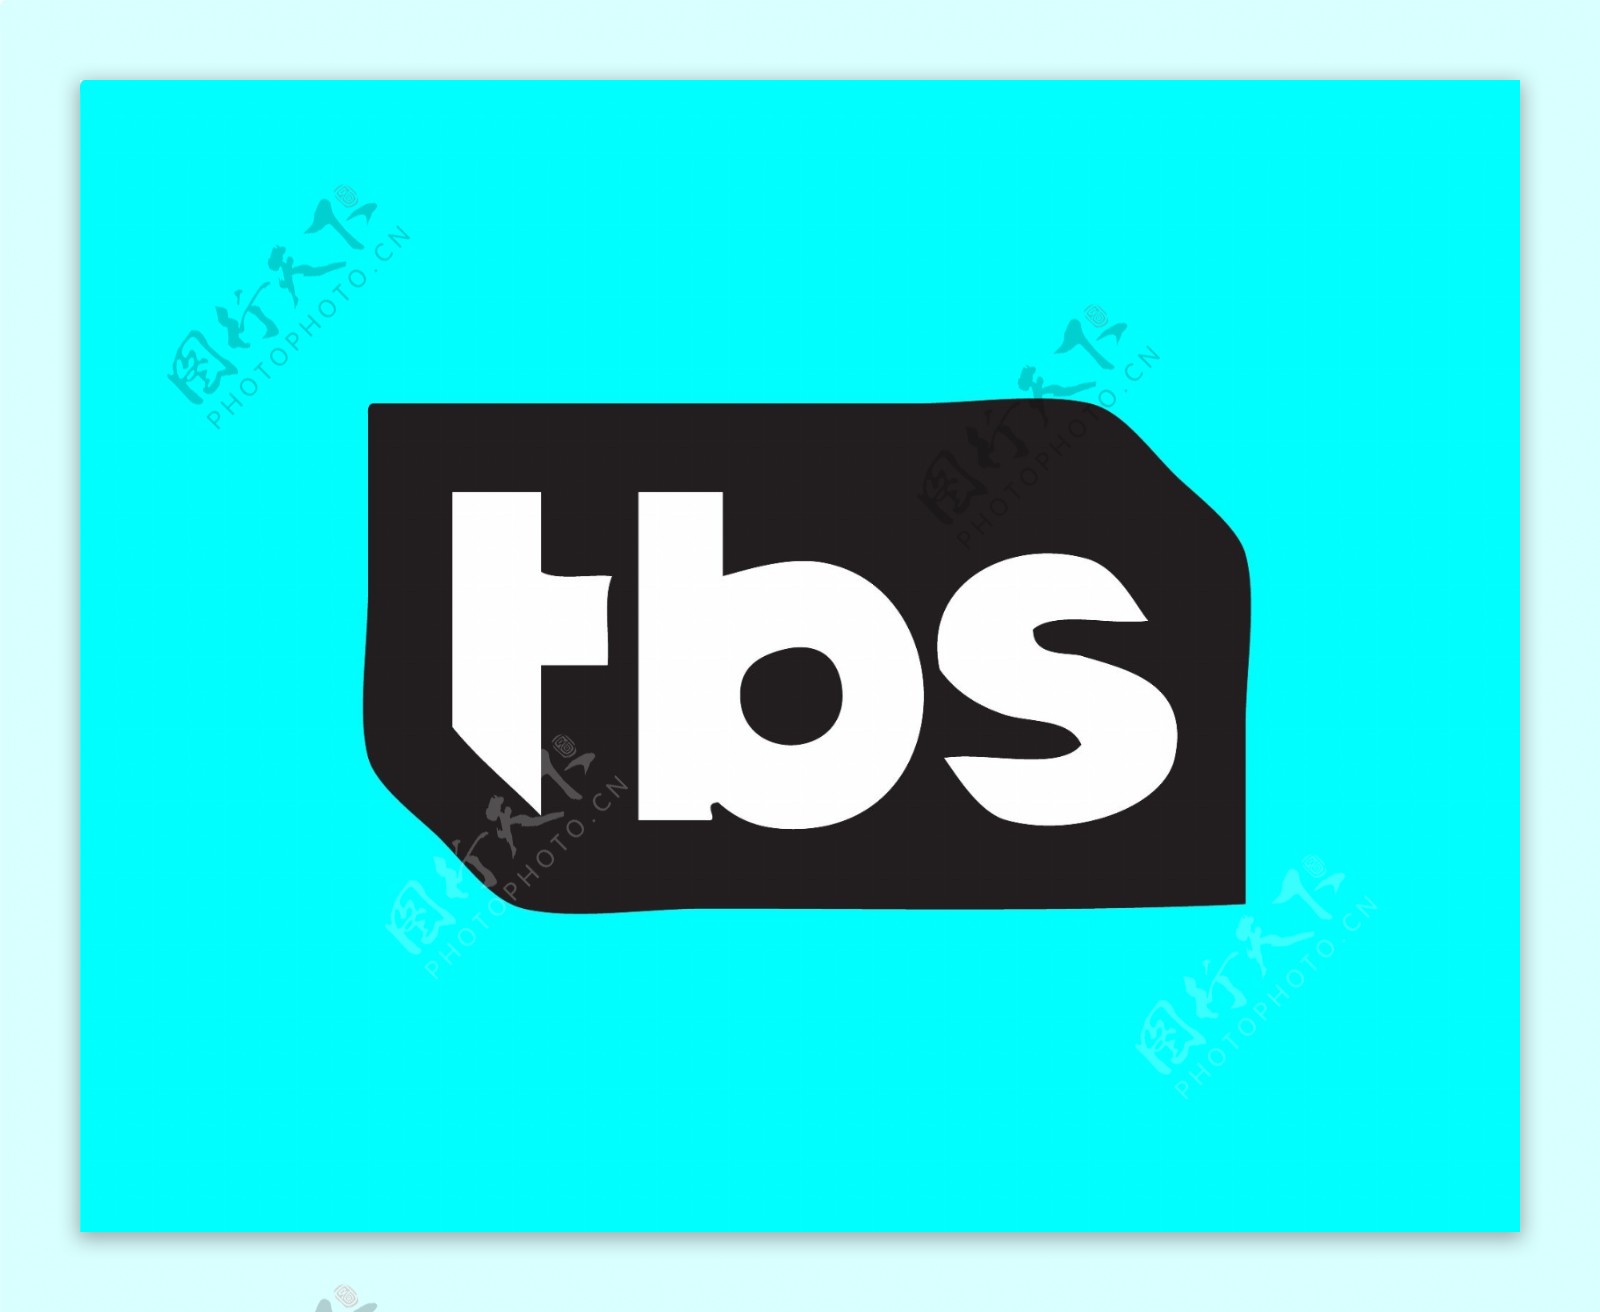 TBS美国特纳广播logo